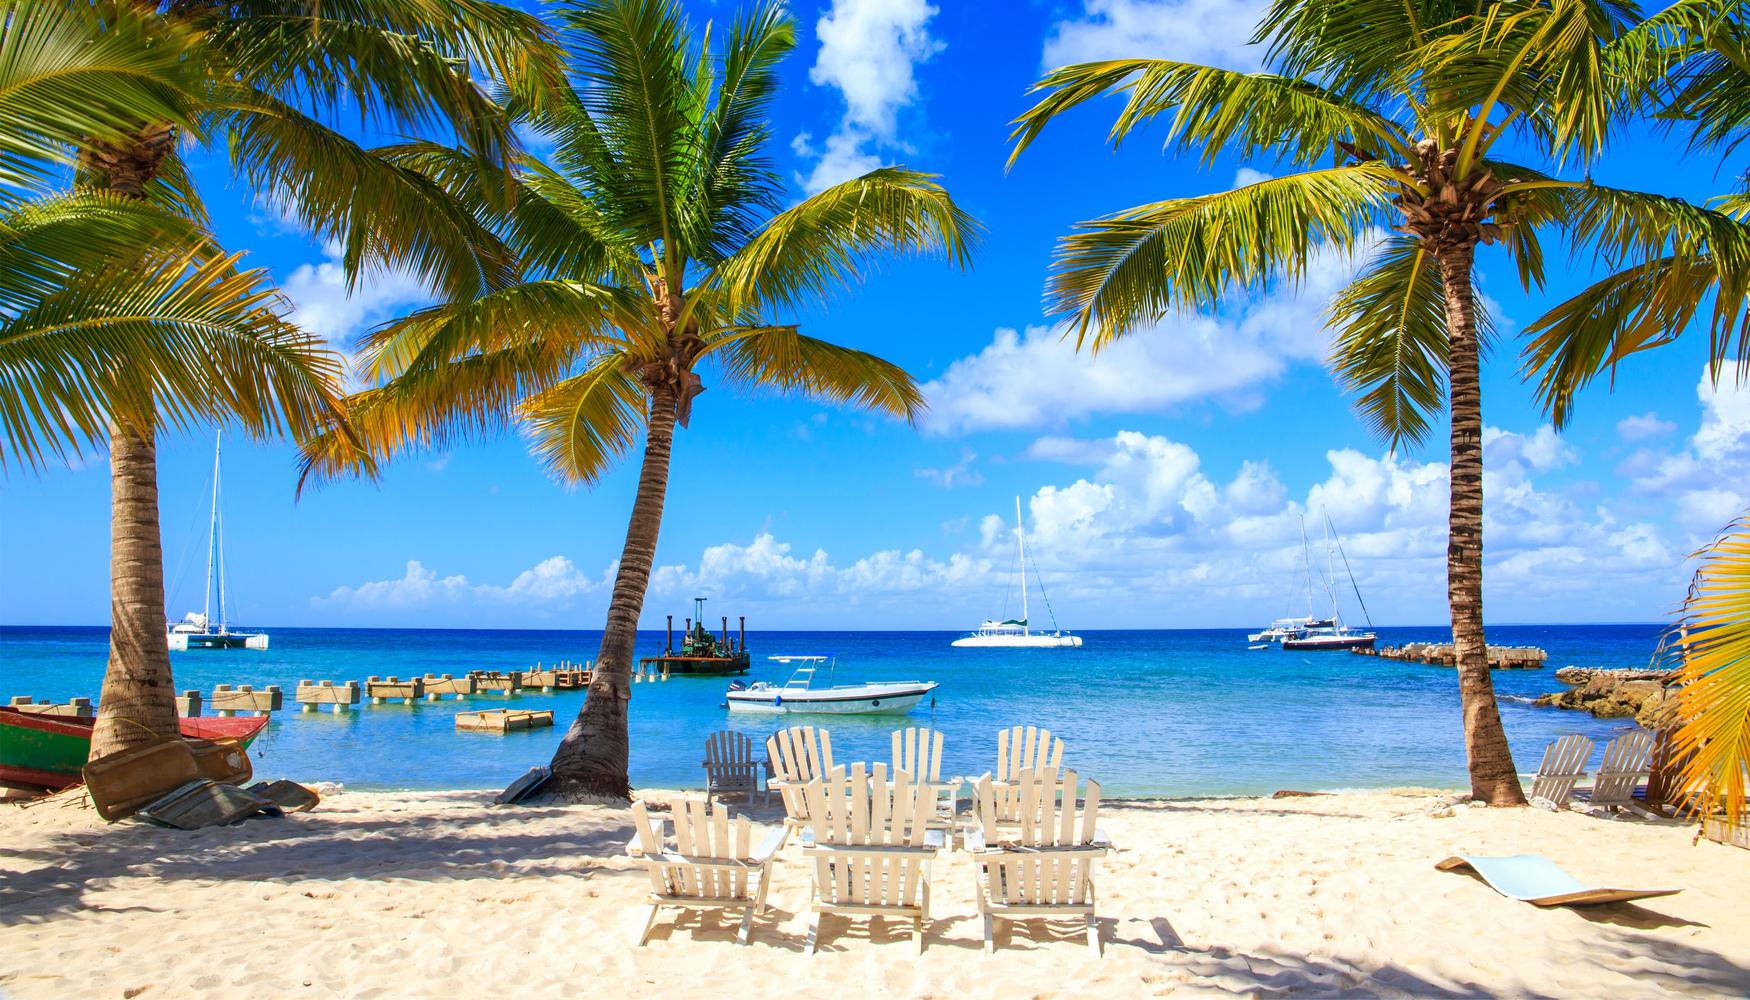 Vacaciones en Punta Cana desde 763 € - Busca oferta de vuelo+hotel en KAYAK